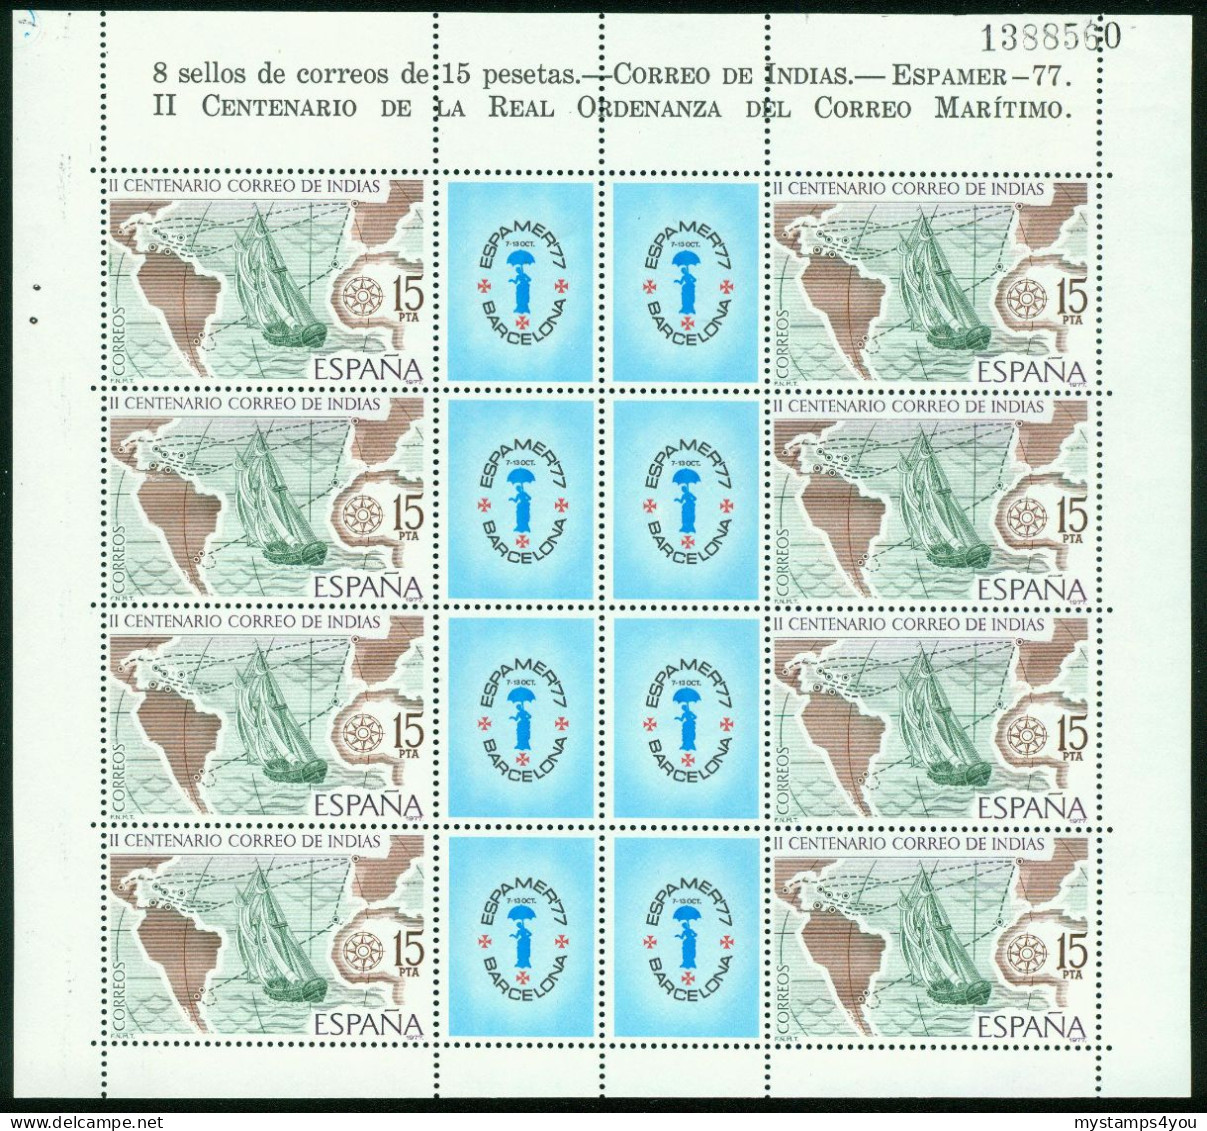 Bm Spain 1977 MiNr 2330 Kleinbogen Sheet MNH | Bicent Of Mail To The Indies. "Espamer 77" Stamp Exn Barcelona #bog-0135 - Blokken & Velletjes